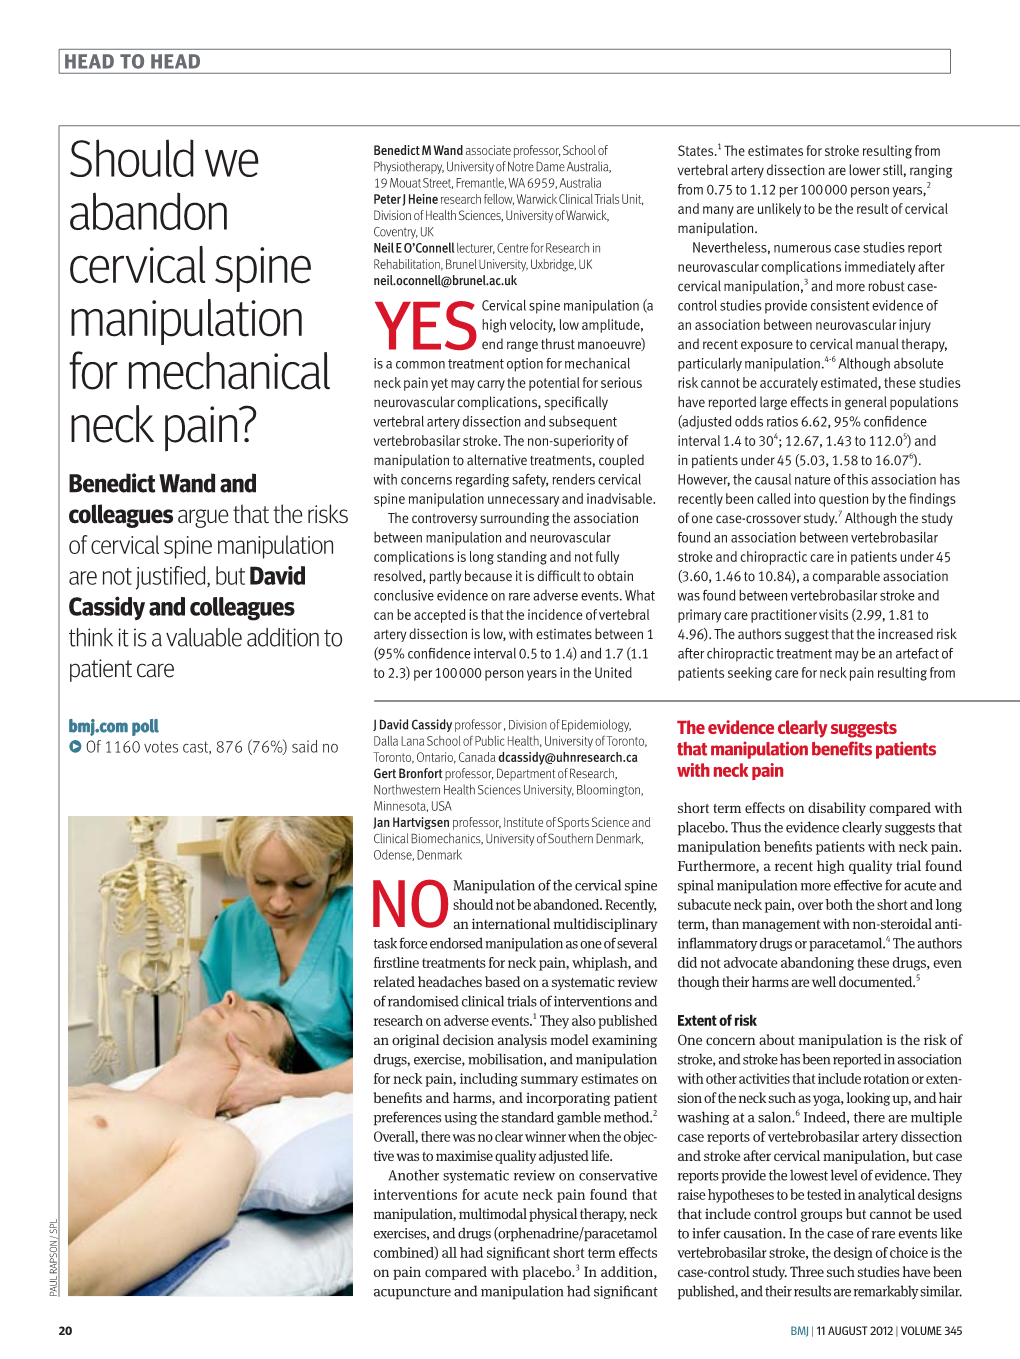 Should We Abandon Cervical Spine Manipulation for Mechanical Neck